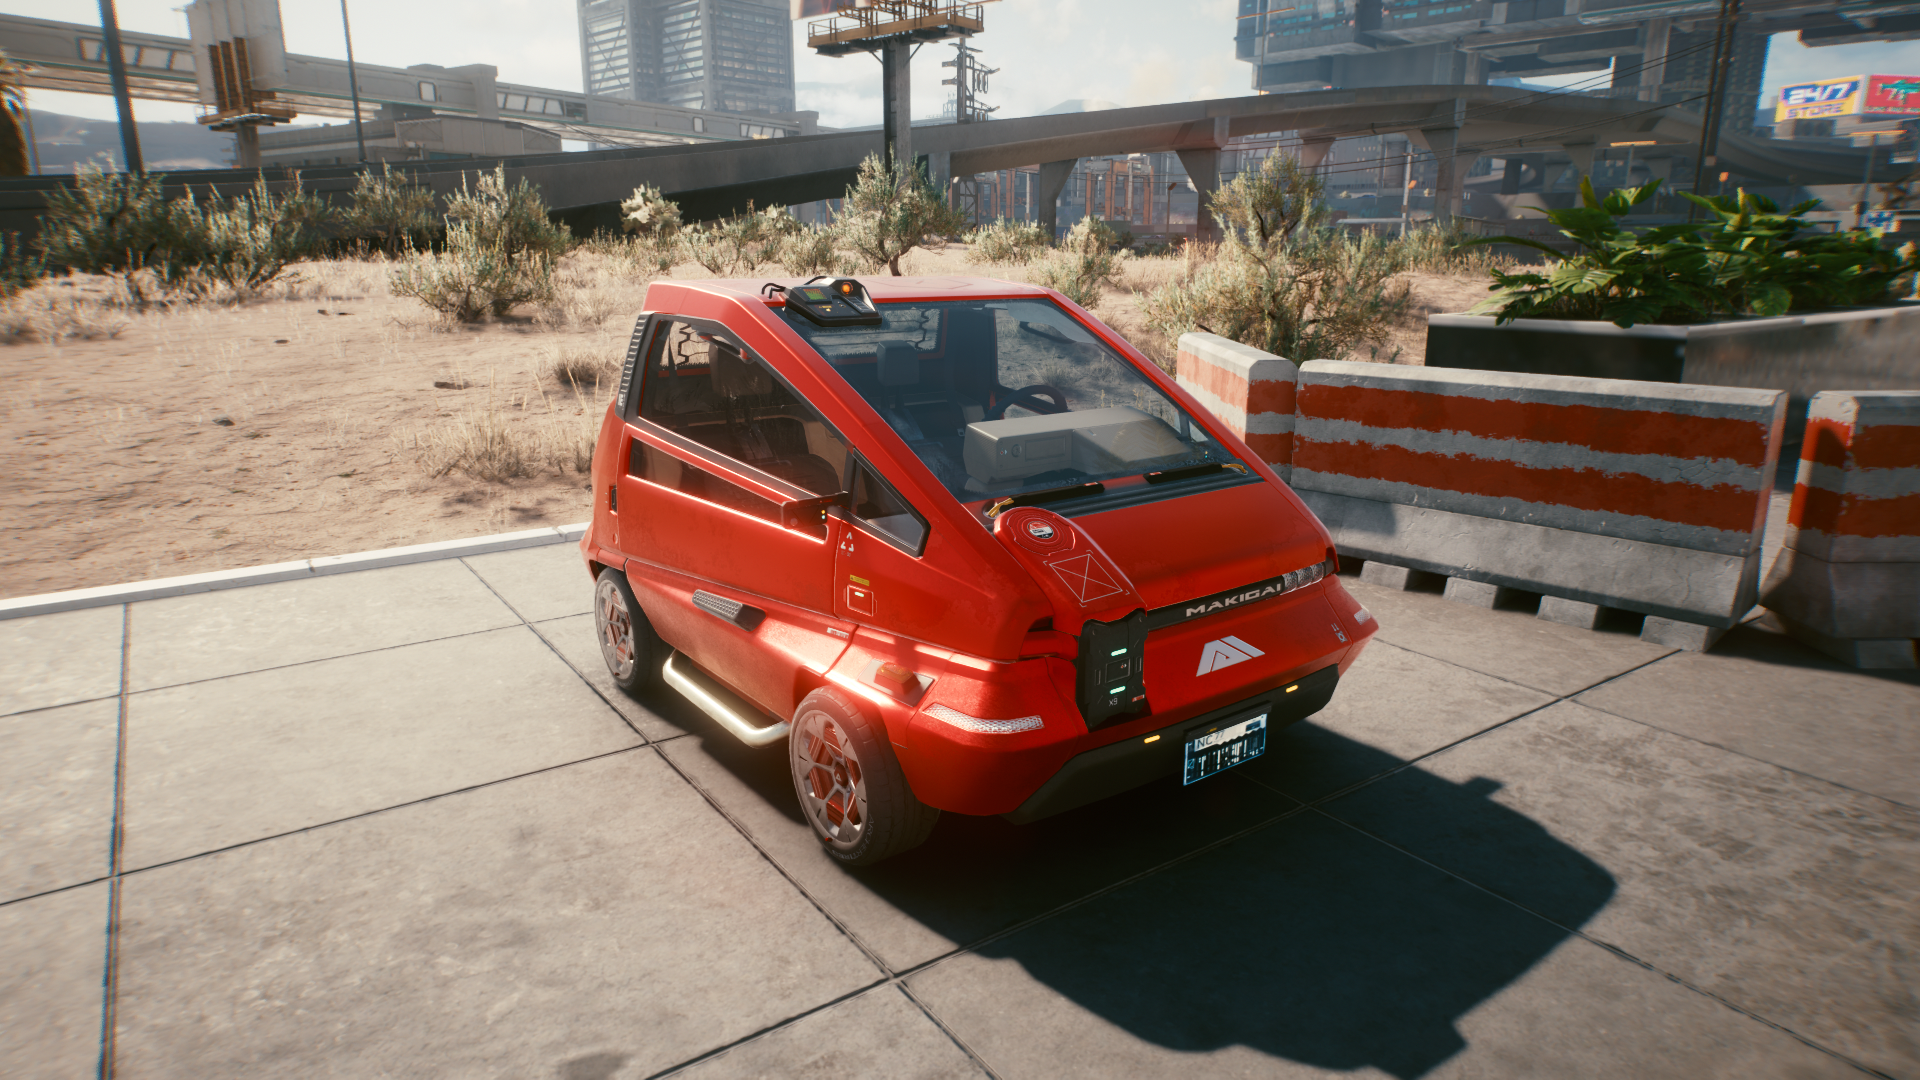 A small red car in Cyberpunk 2077